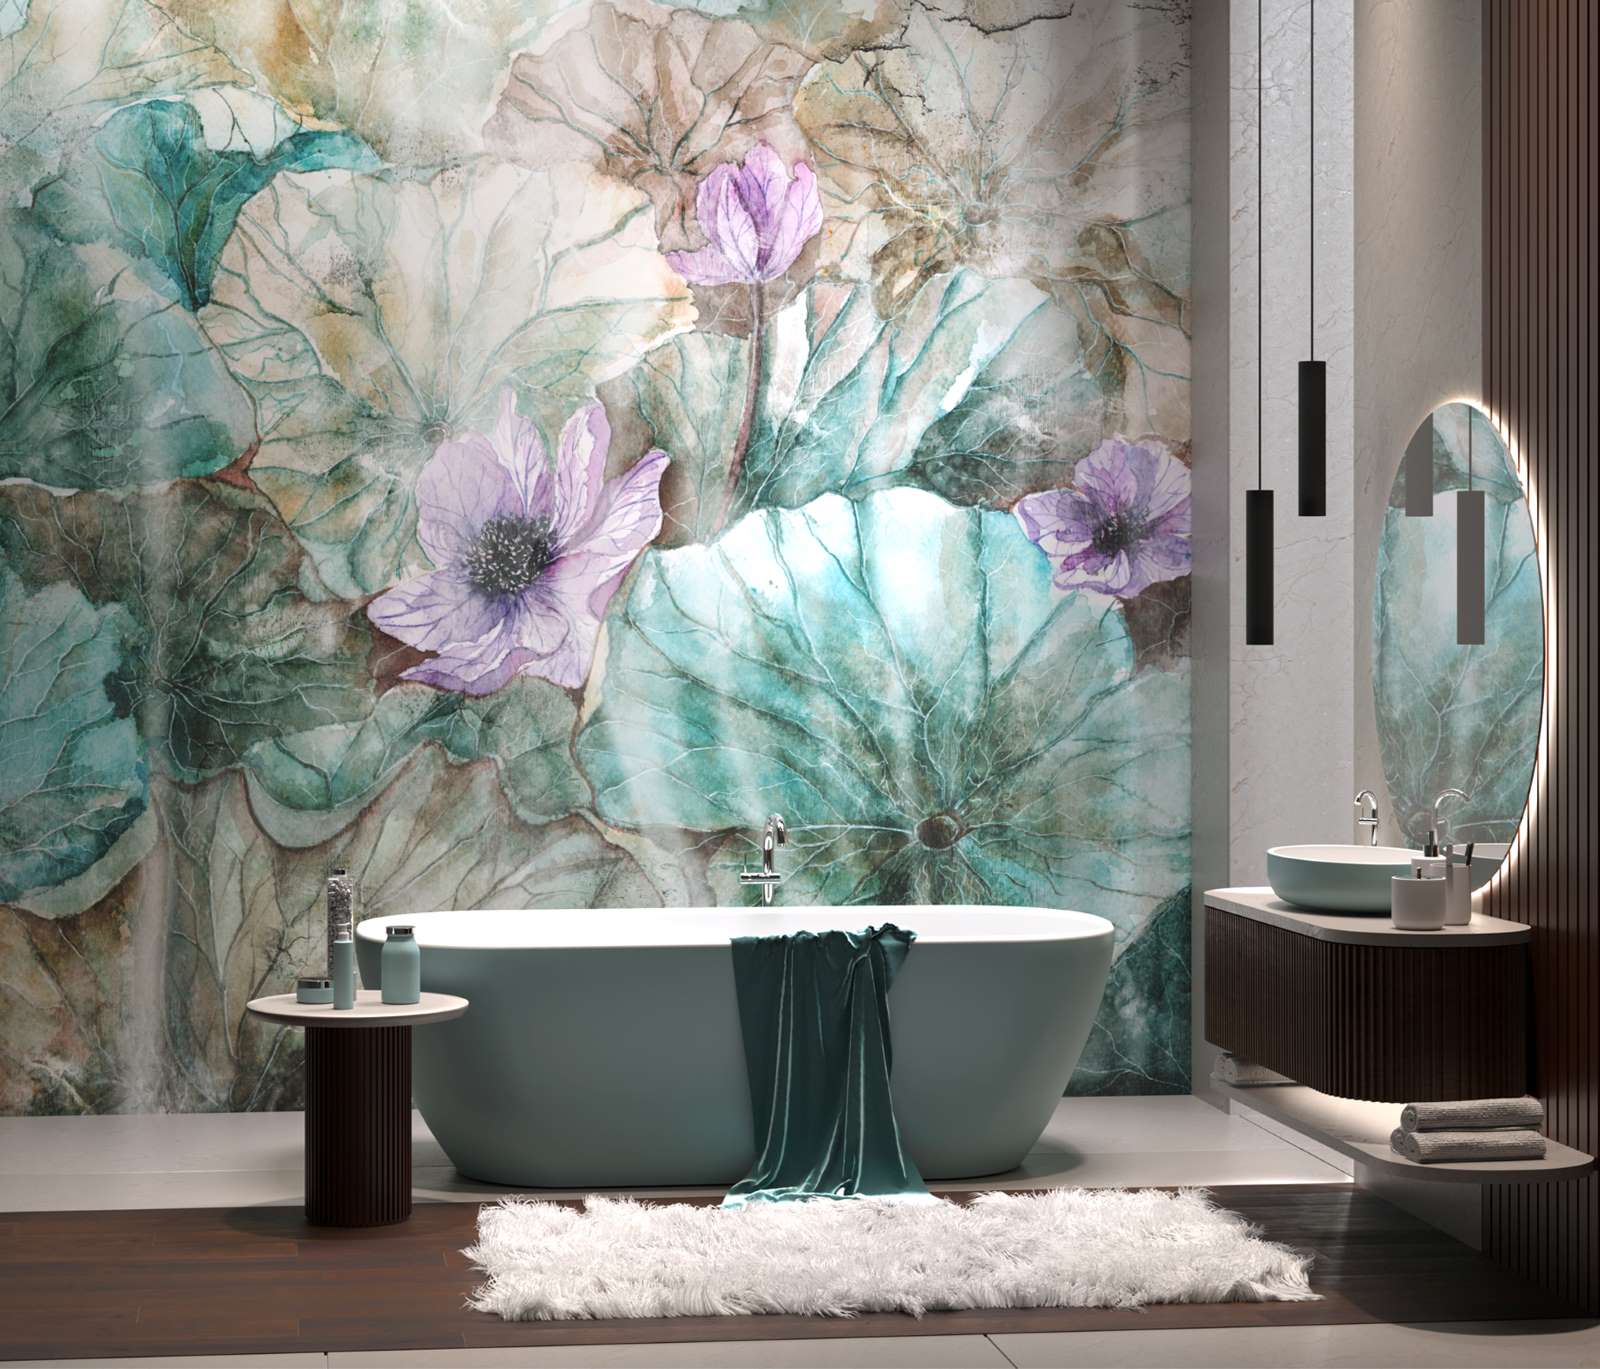 Tapeta wielkoformatowa Ophelia Wallcraft w aranżacji łazienki (produkt dostępny w showroomach z Grupy Internity Home)